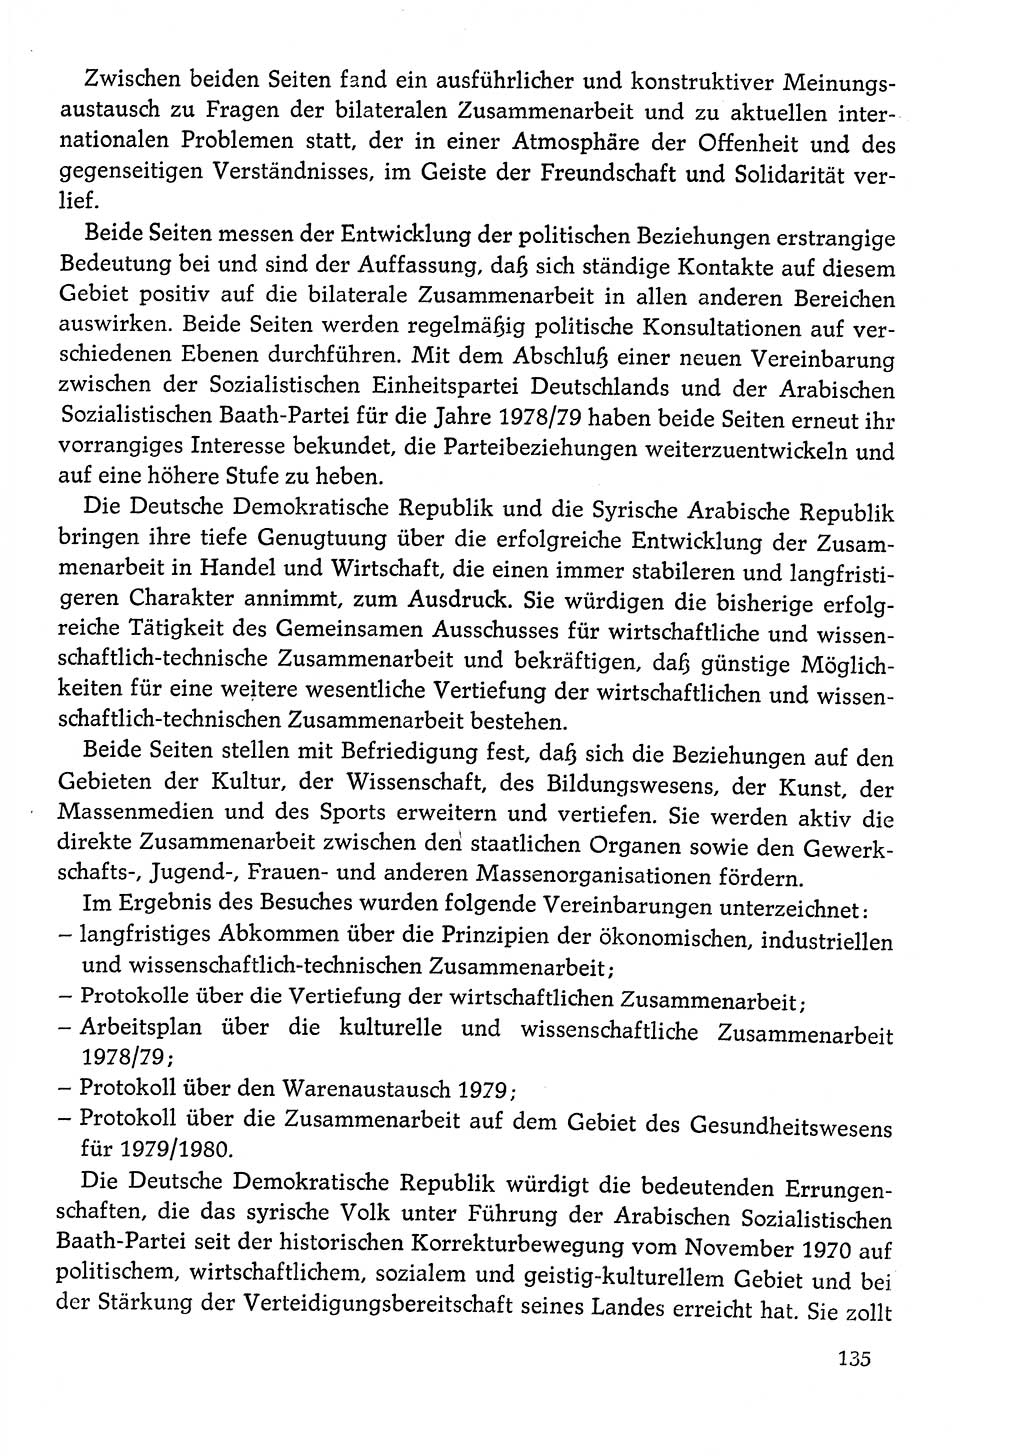 Dokumente der Sozialistischen Einheitspartei Deutschlands (SED) [Deutsche Demokratische Republik (DDR)] 1978-1979, Seite 135 (Dok. SED DDR 1978-1979, S. 135)